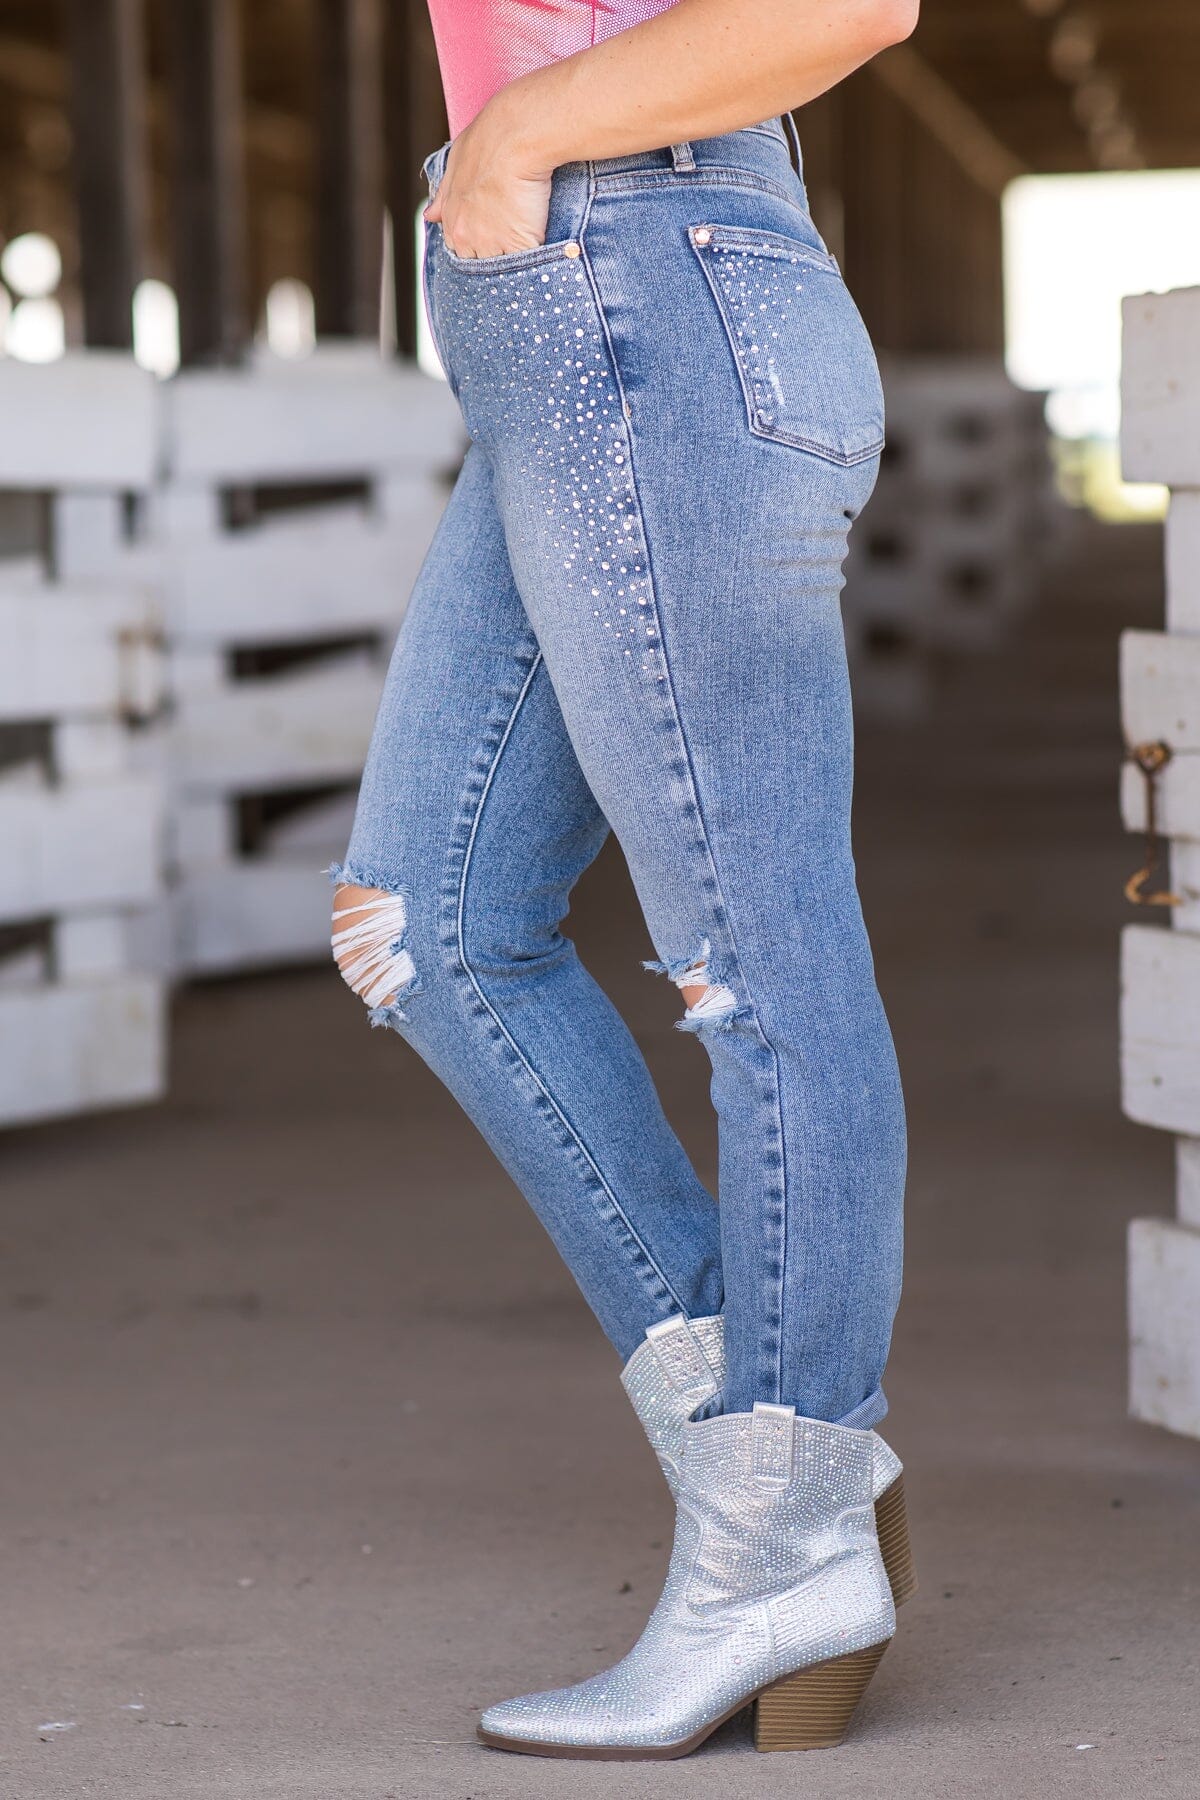 Judy Blue Jeans Women's Rhinestone Embellished Jeans | Size 13